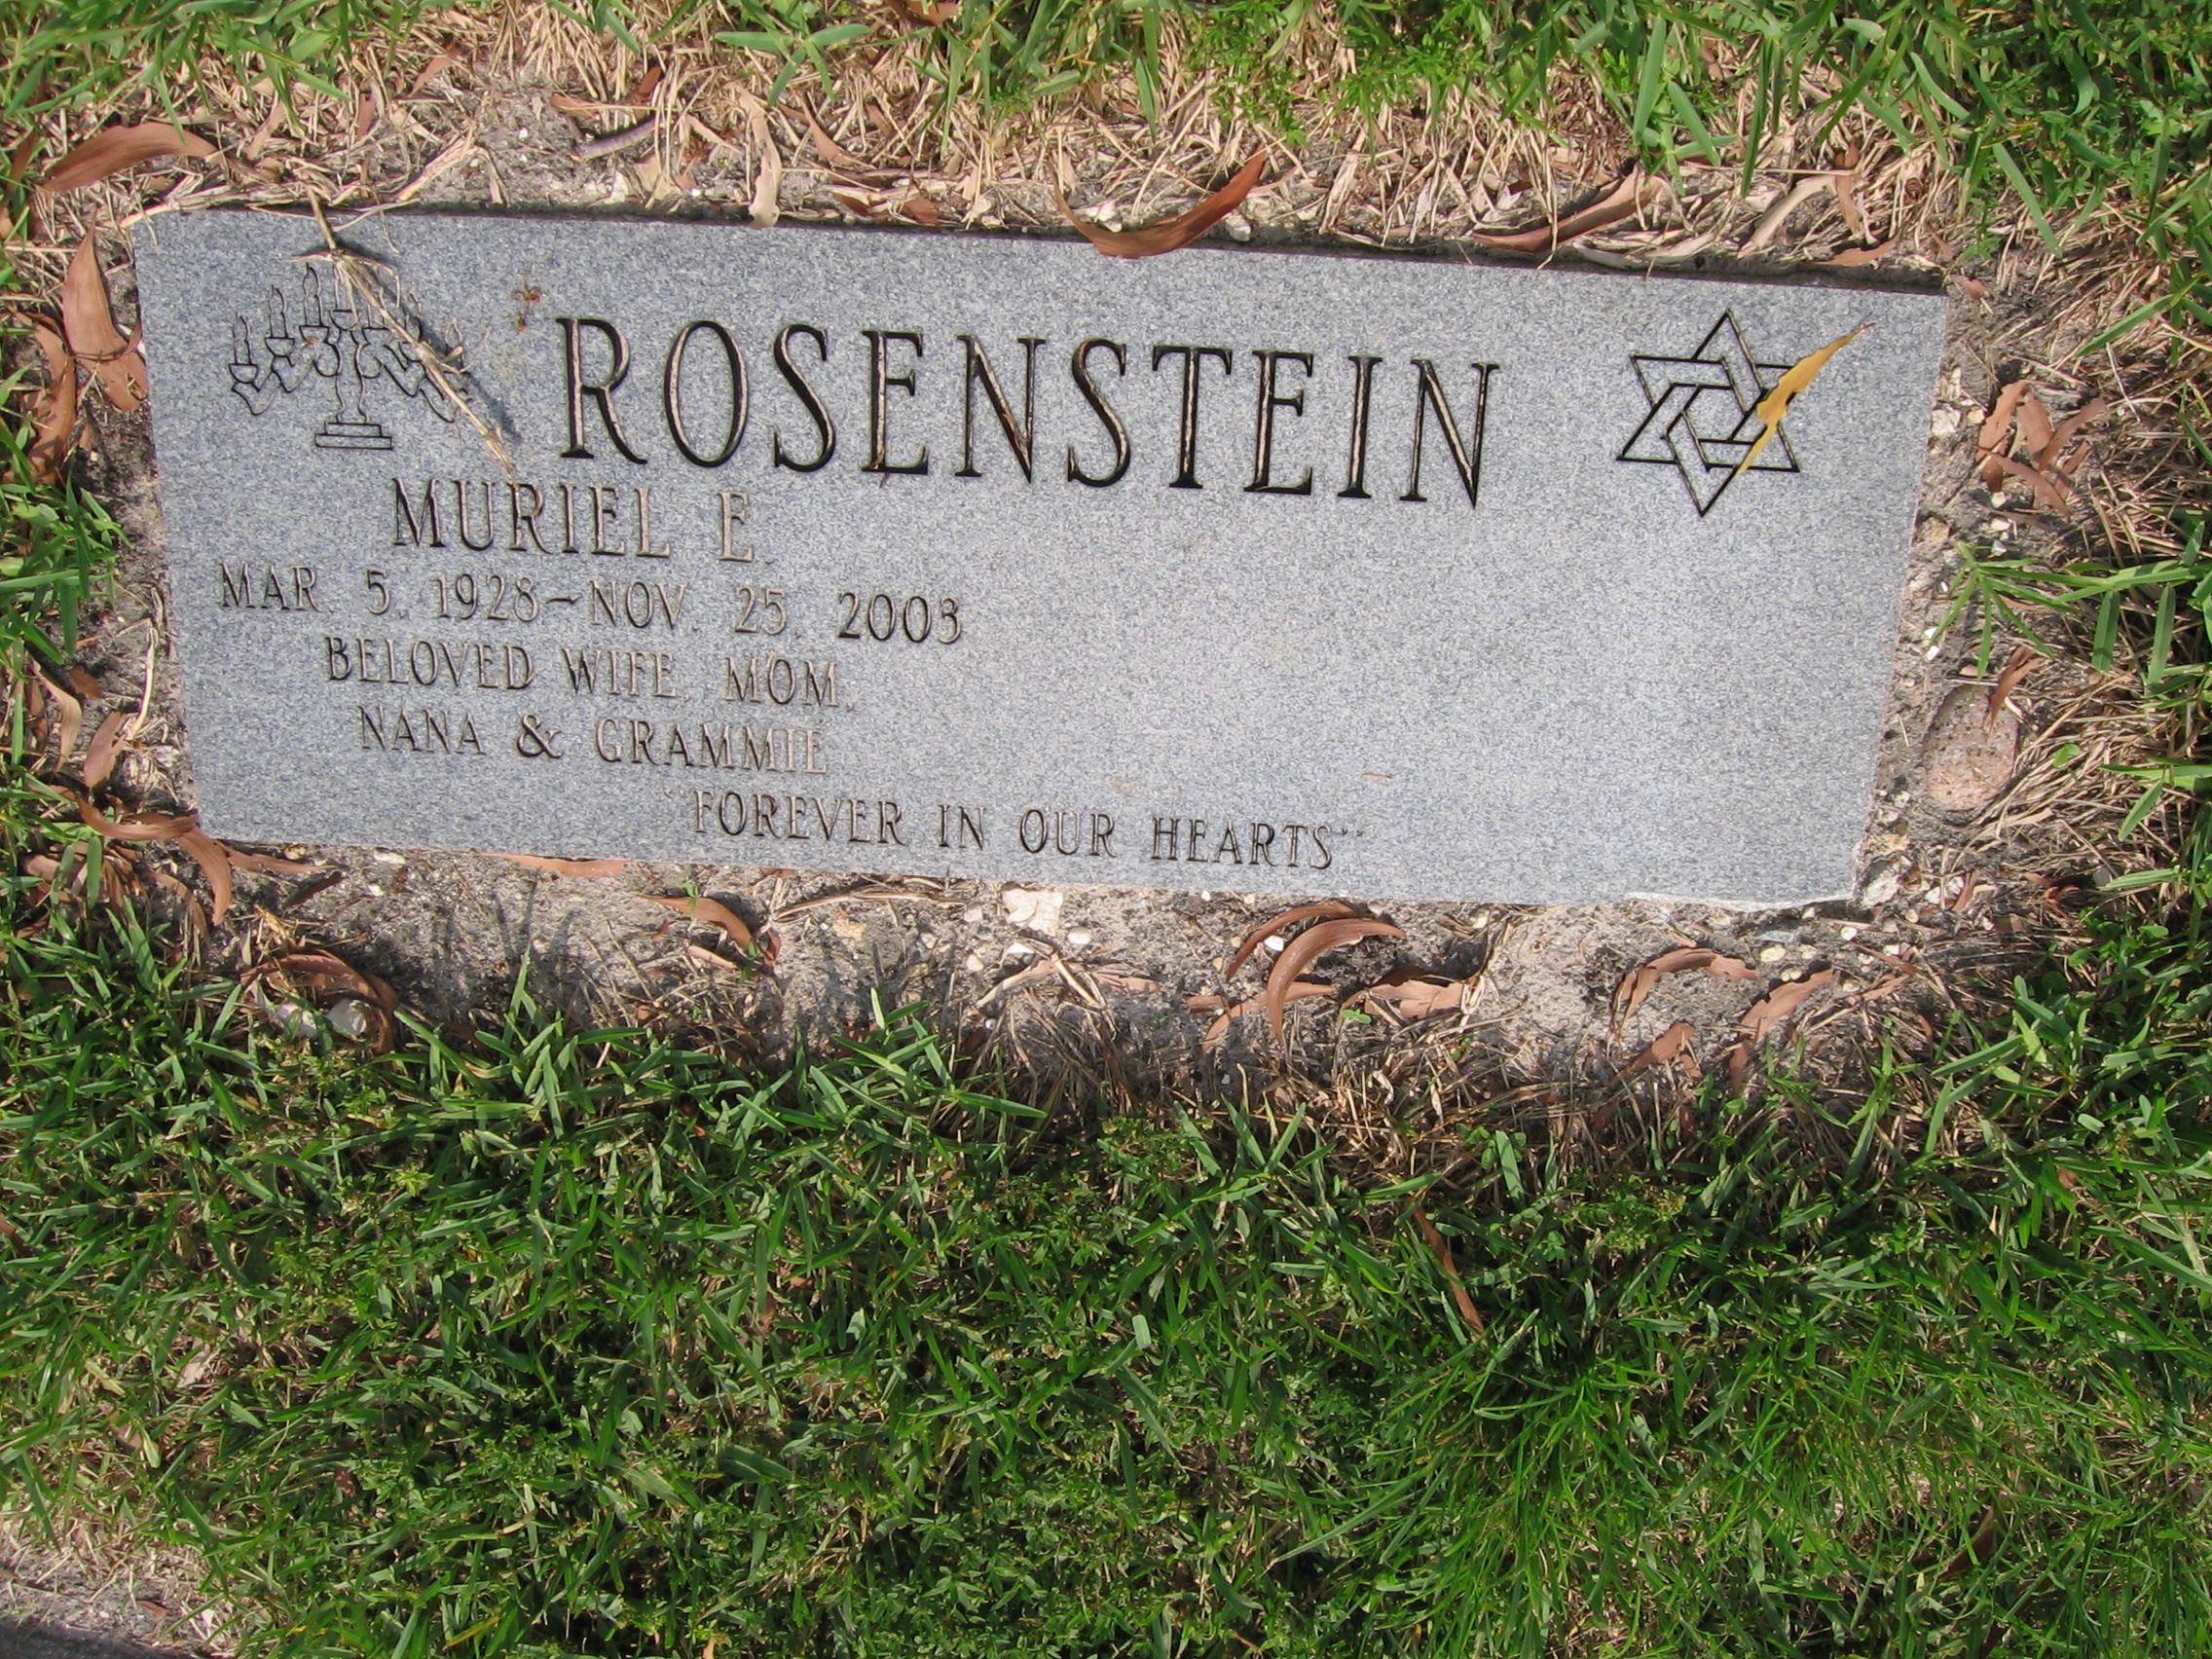 Muriel E Rosenstein